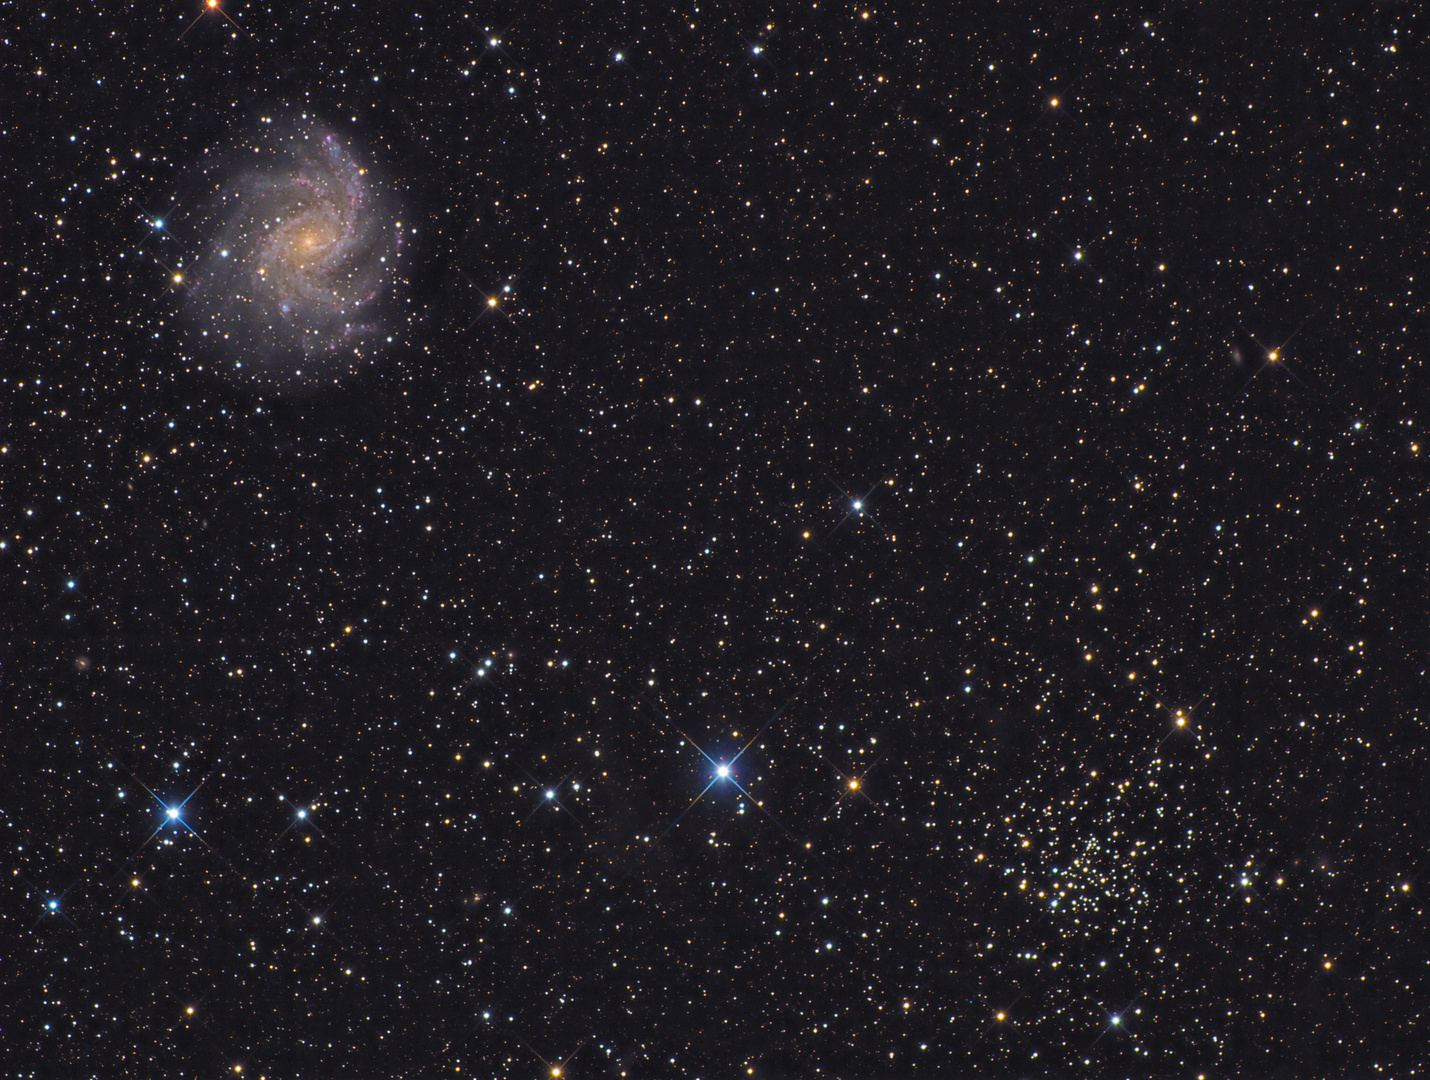 Die Fireworks-Galaxie NGC 6946 und der offene Sternhaufen NGC 6939